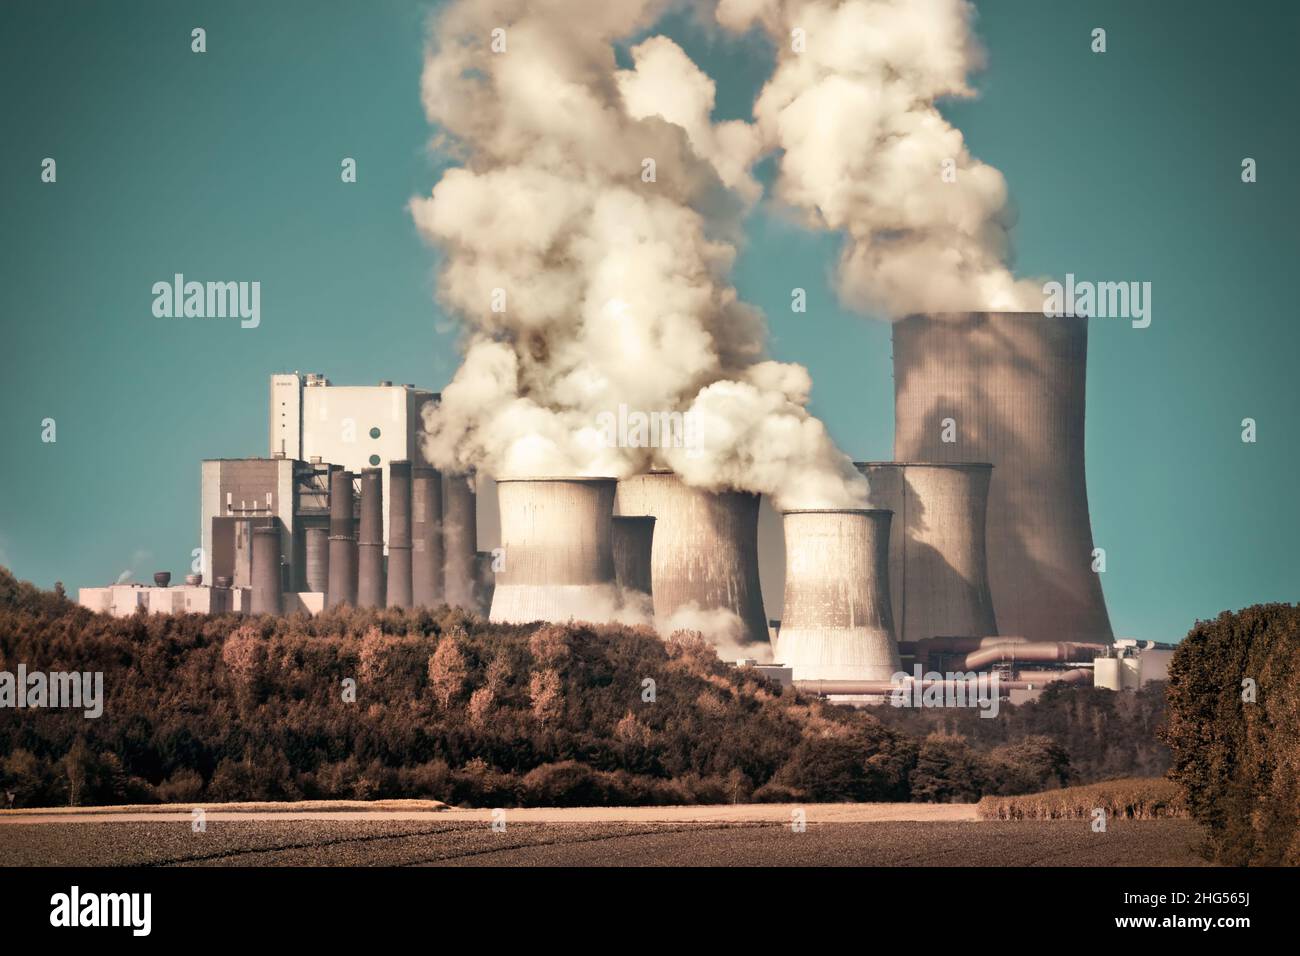 Gran central de carbón con vapor y humo en el cielo azulado, aspecto dramático Foto de stock